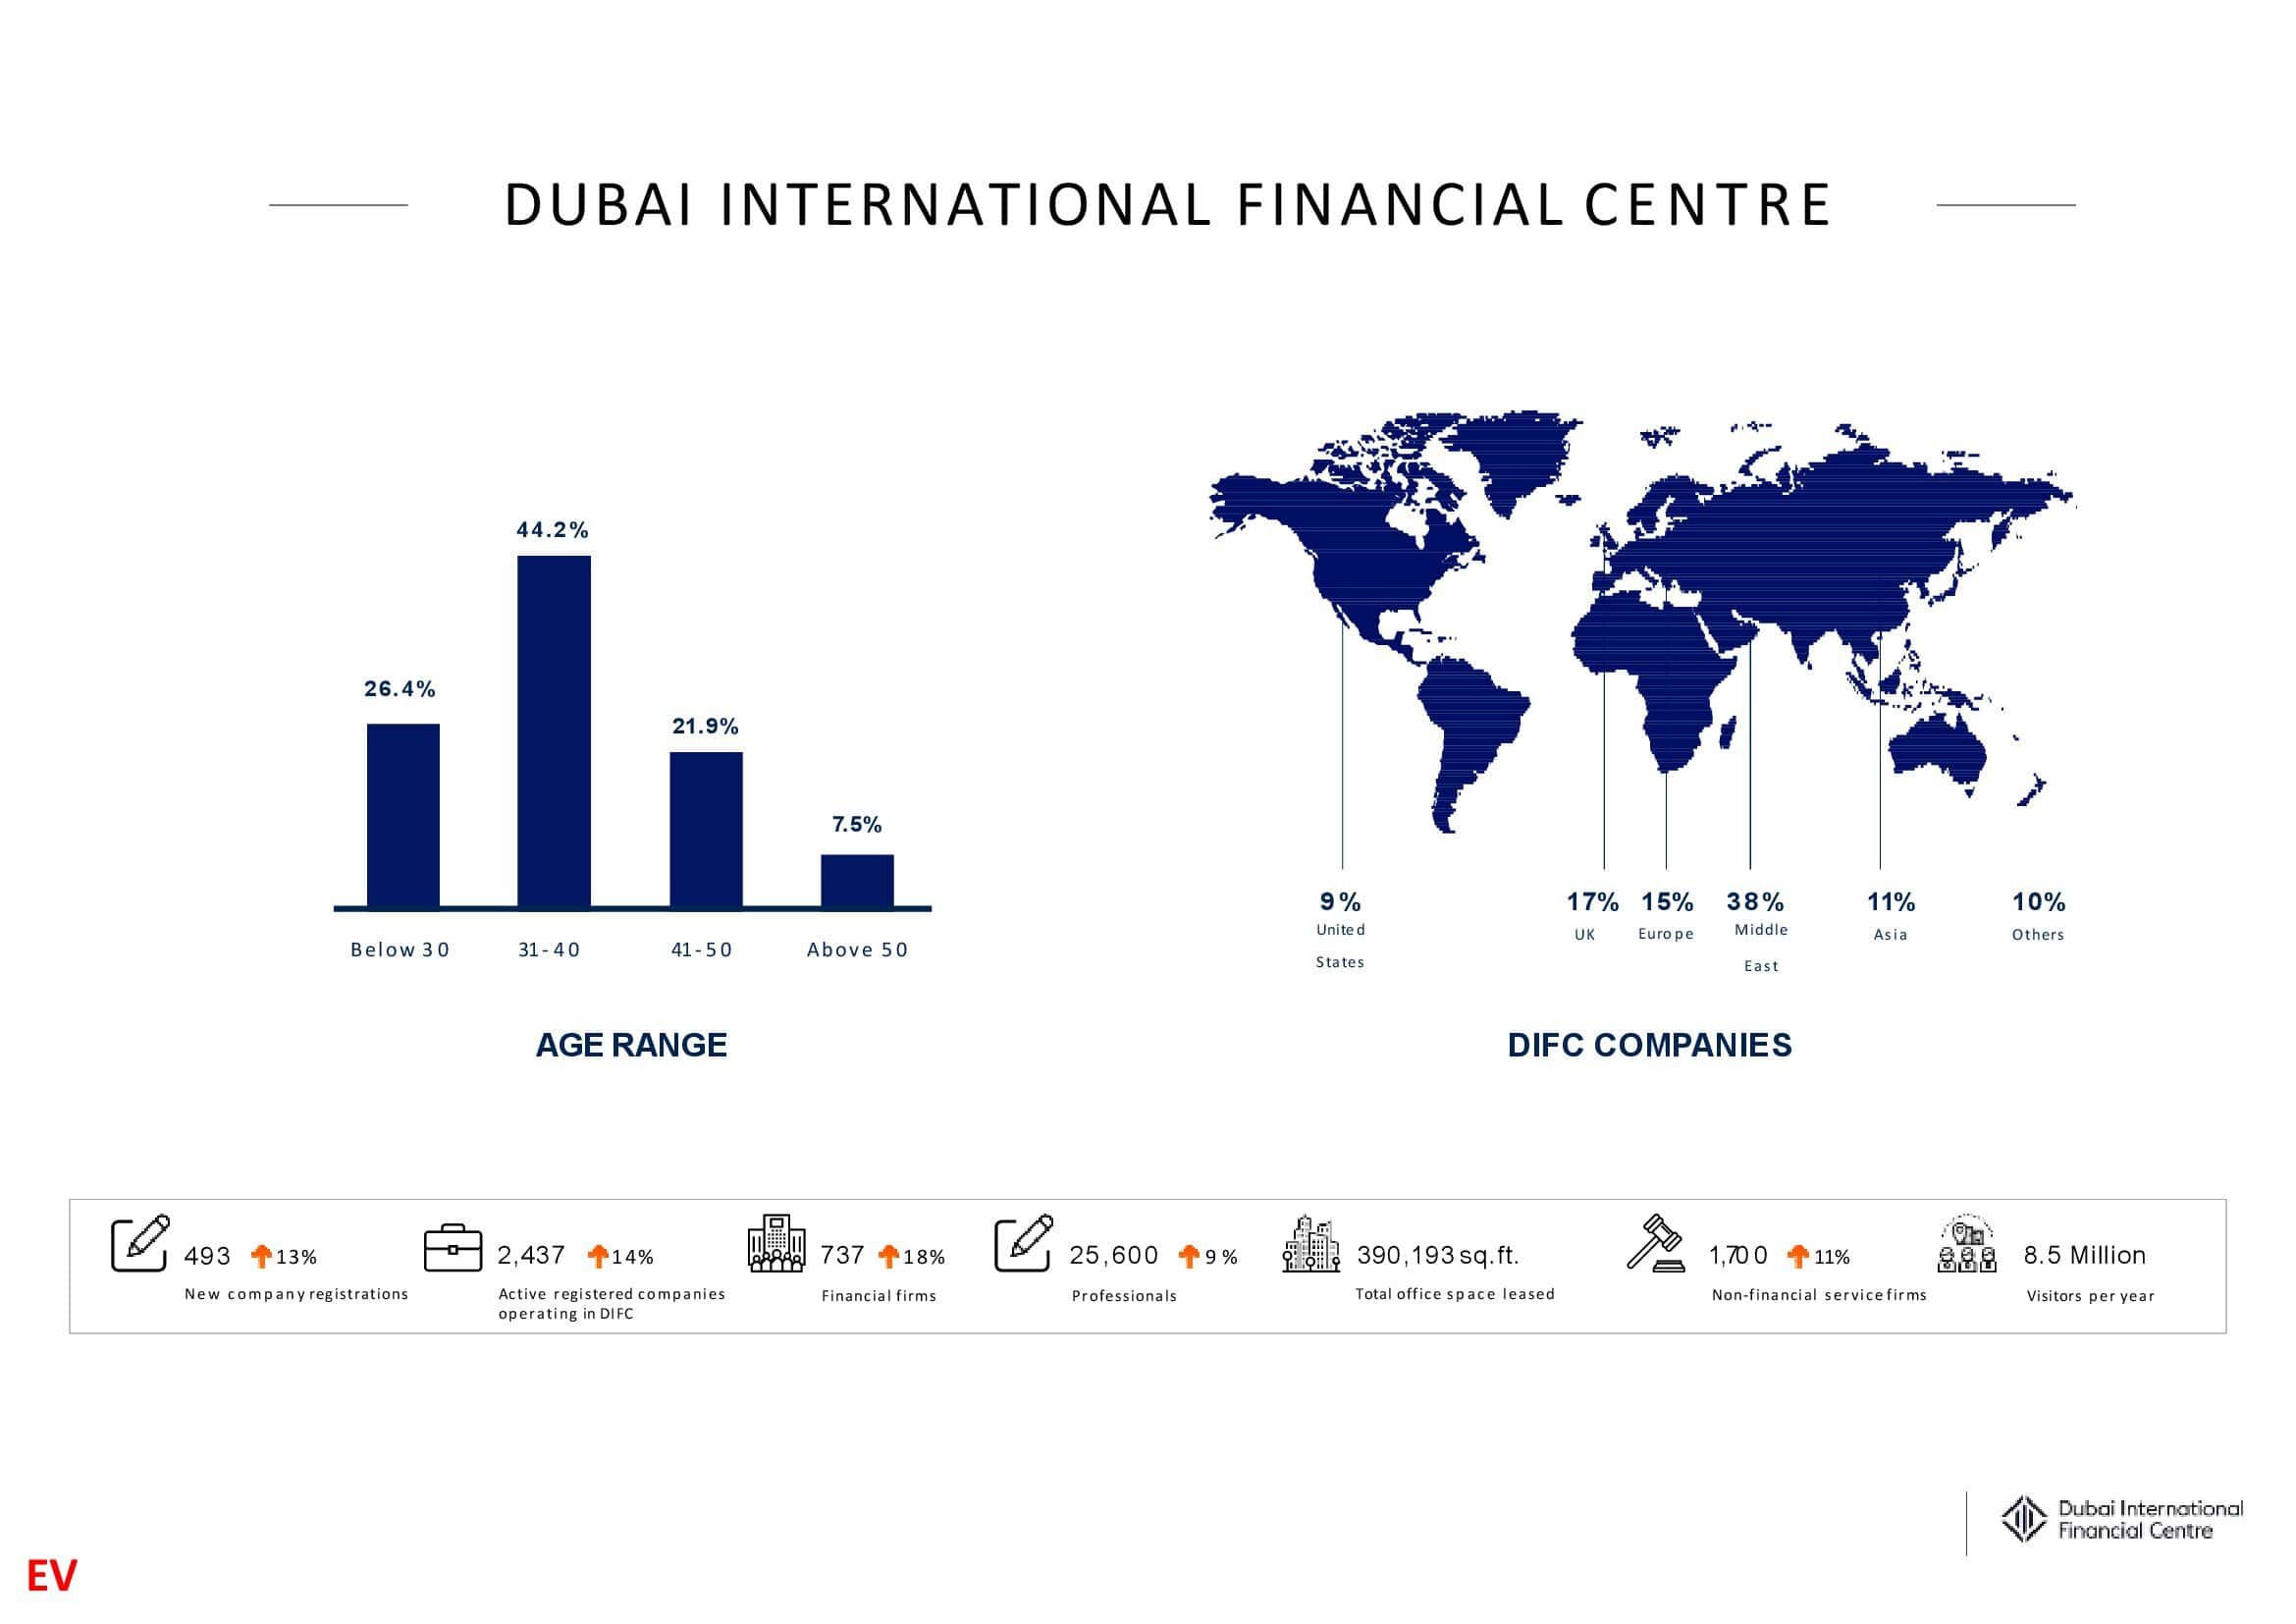 DIFC (Dubai International Financial Centre) Advertising DUBAI UAE